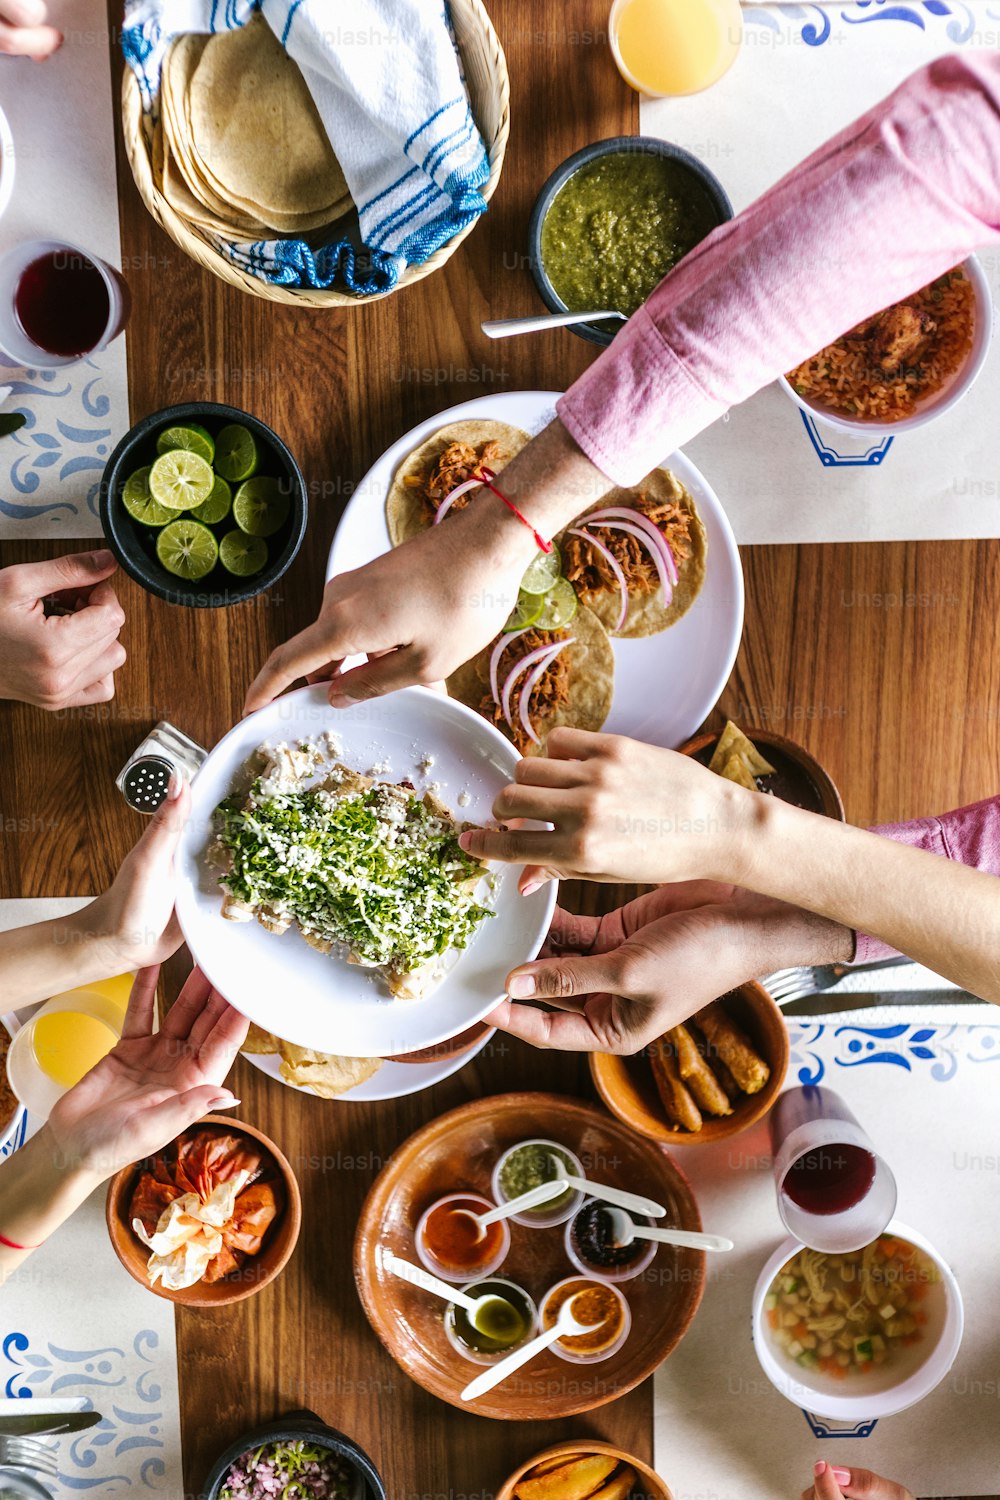 メキシコのタコスや伝統的な食べ物、スナック、テーブル、上面図の人々の手を食べるラテン系の友達のグループ。メキシコ料理ラテンアメリカ